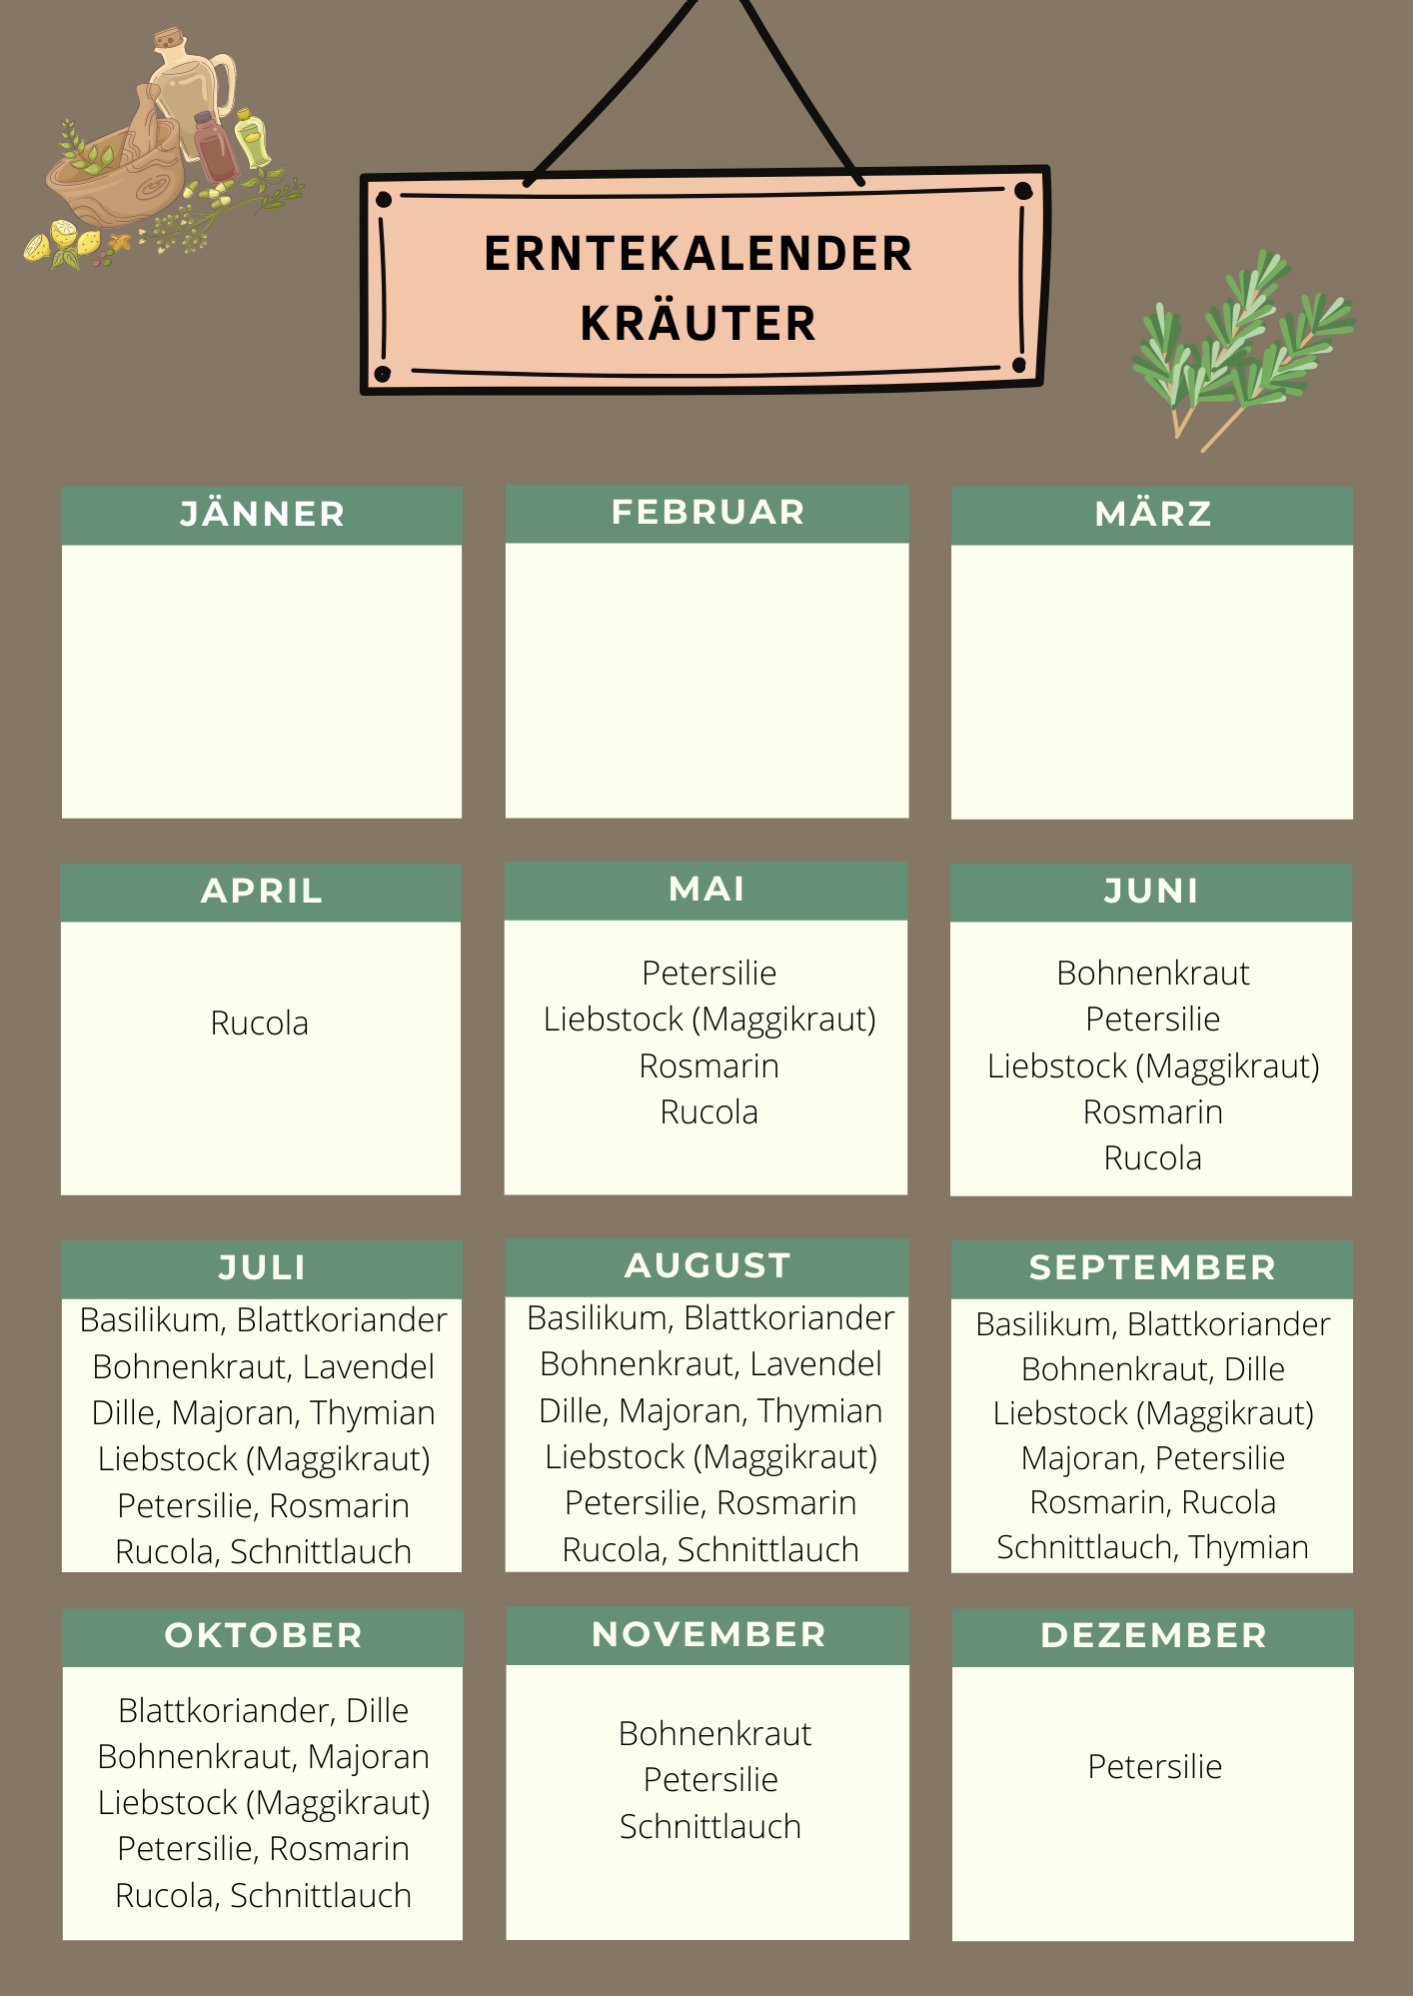 Erntekalender Kräuter